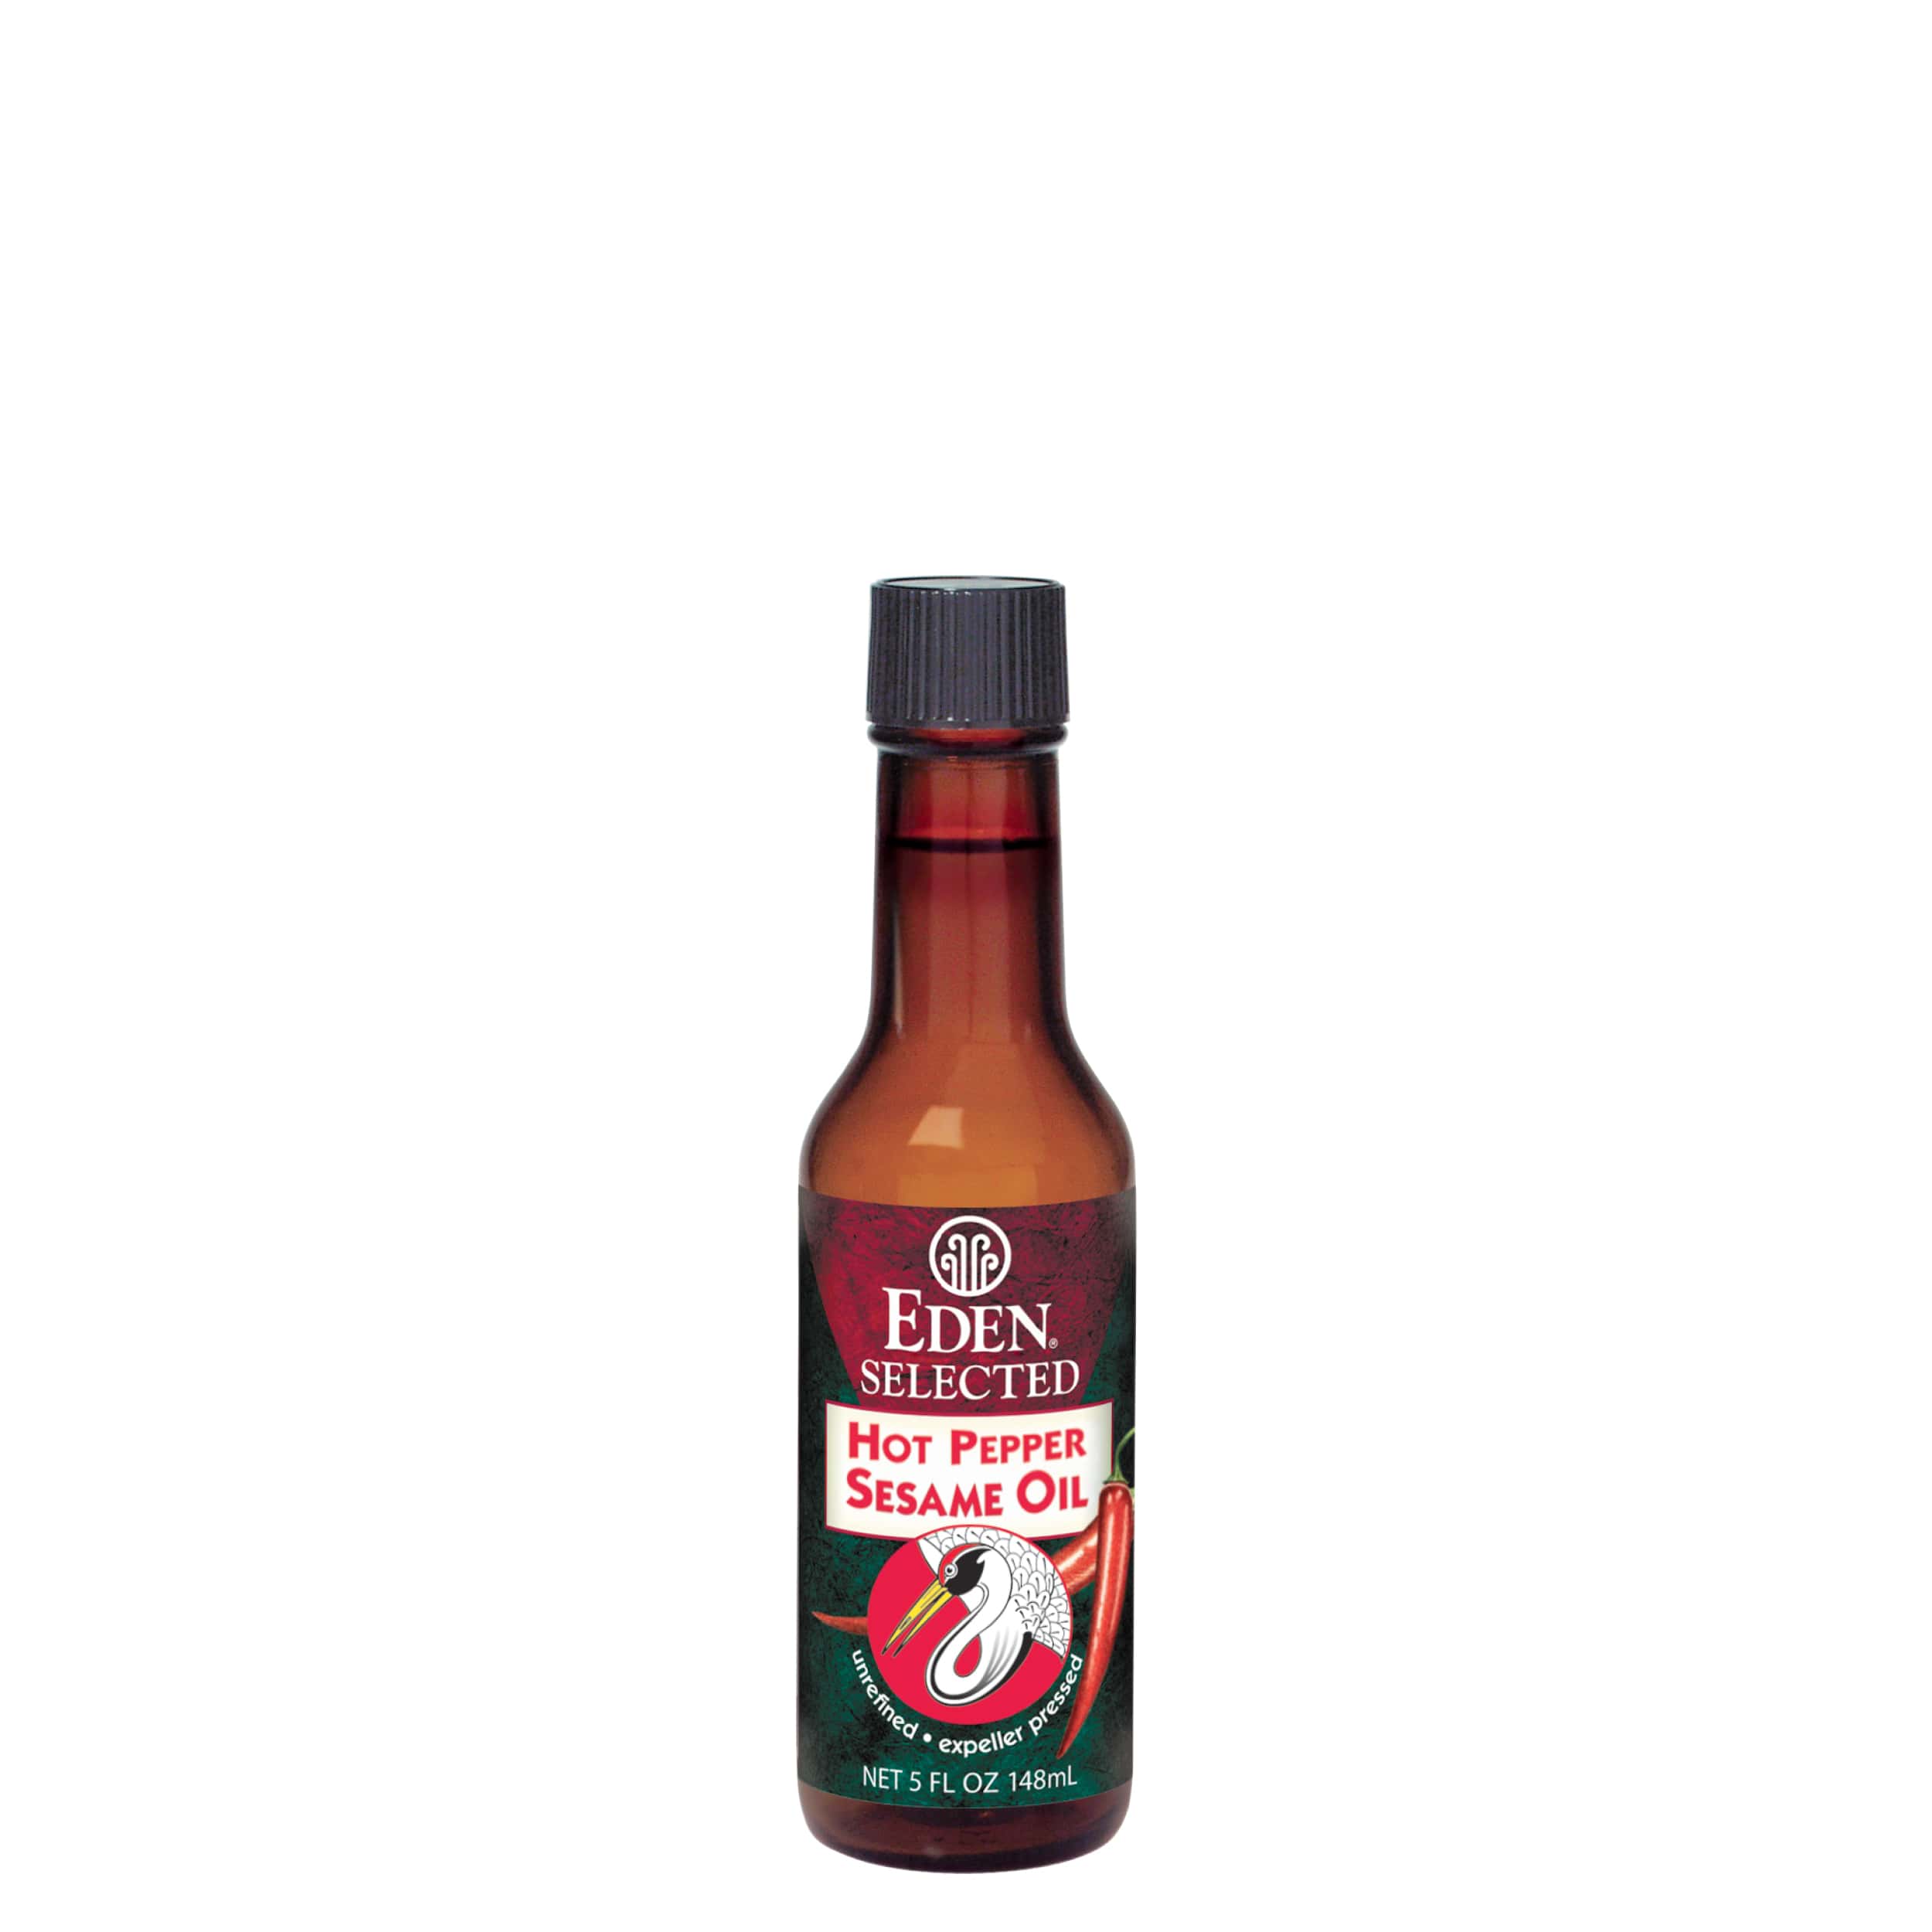 Hot Pepper Sesame Oil - 5 fl oz